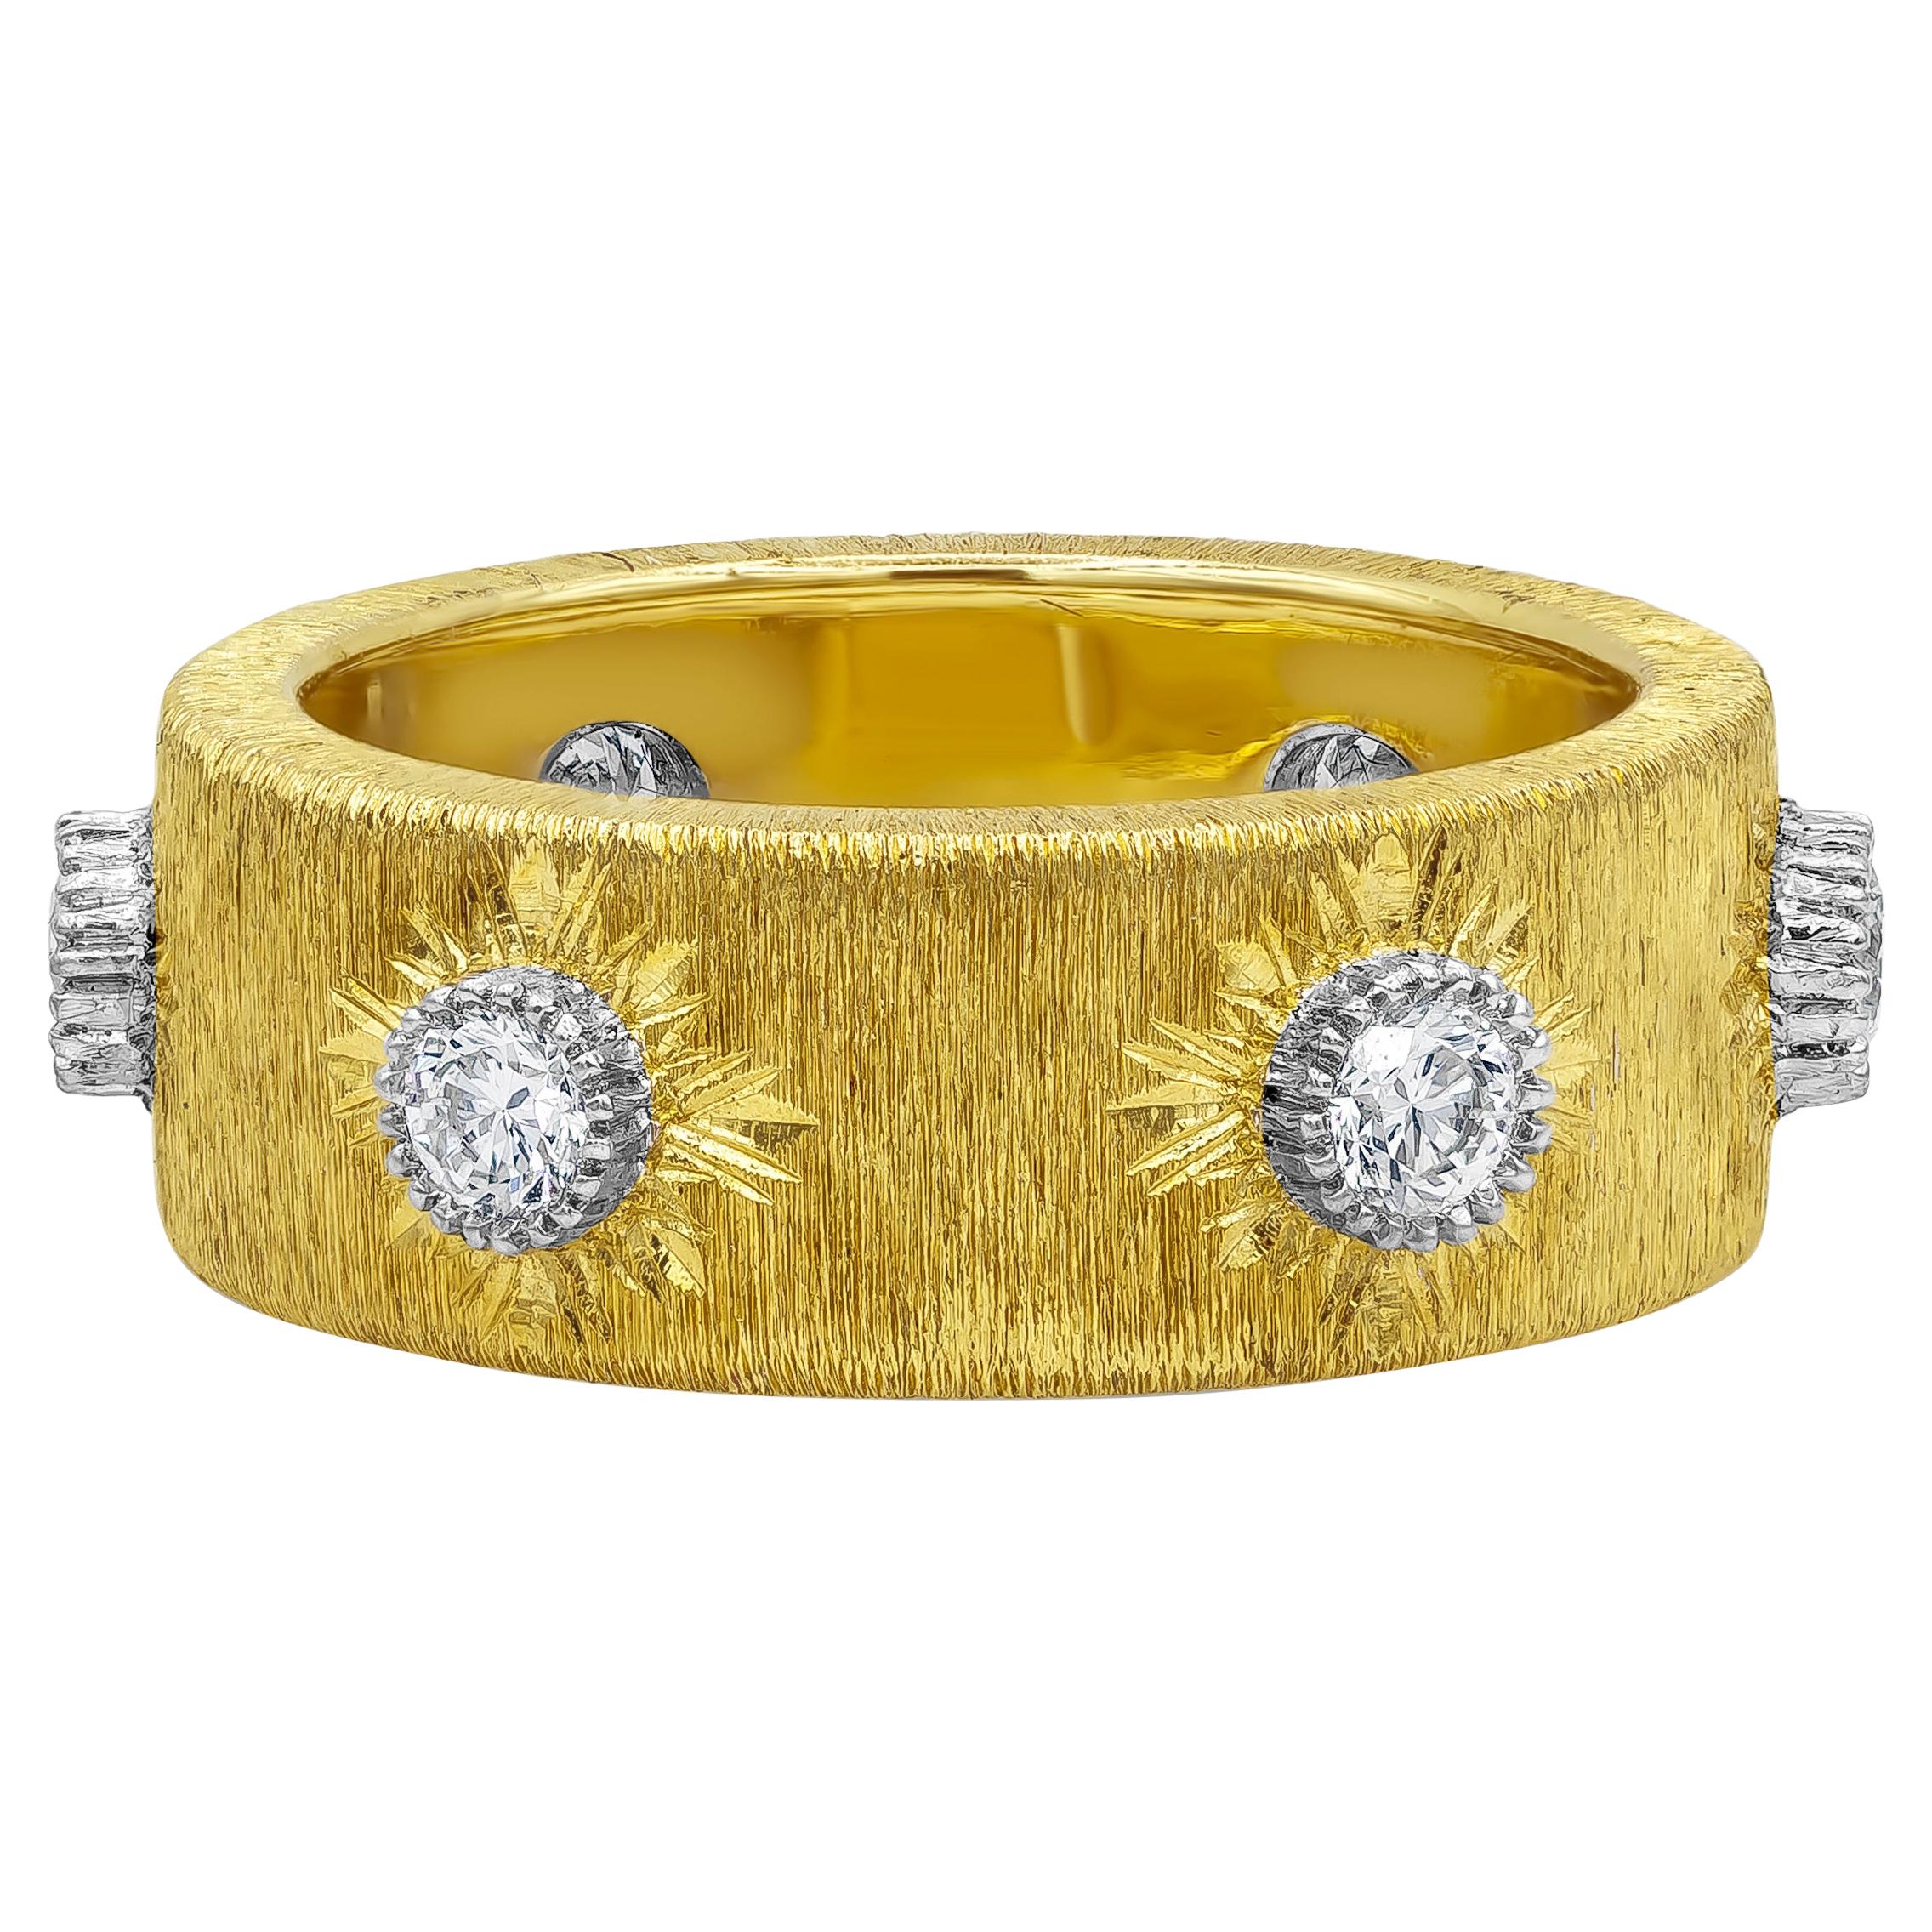 Bague à la mode en or jaune brossé avec diamants ronds brillants de 0,60 carat au total